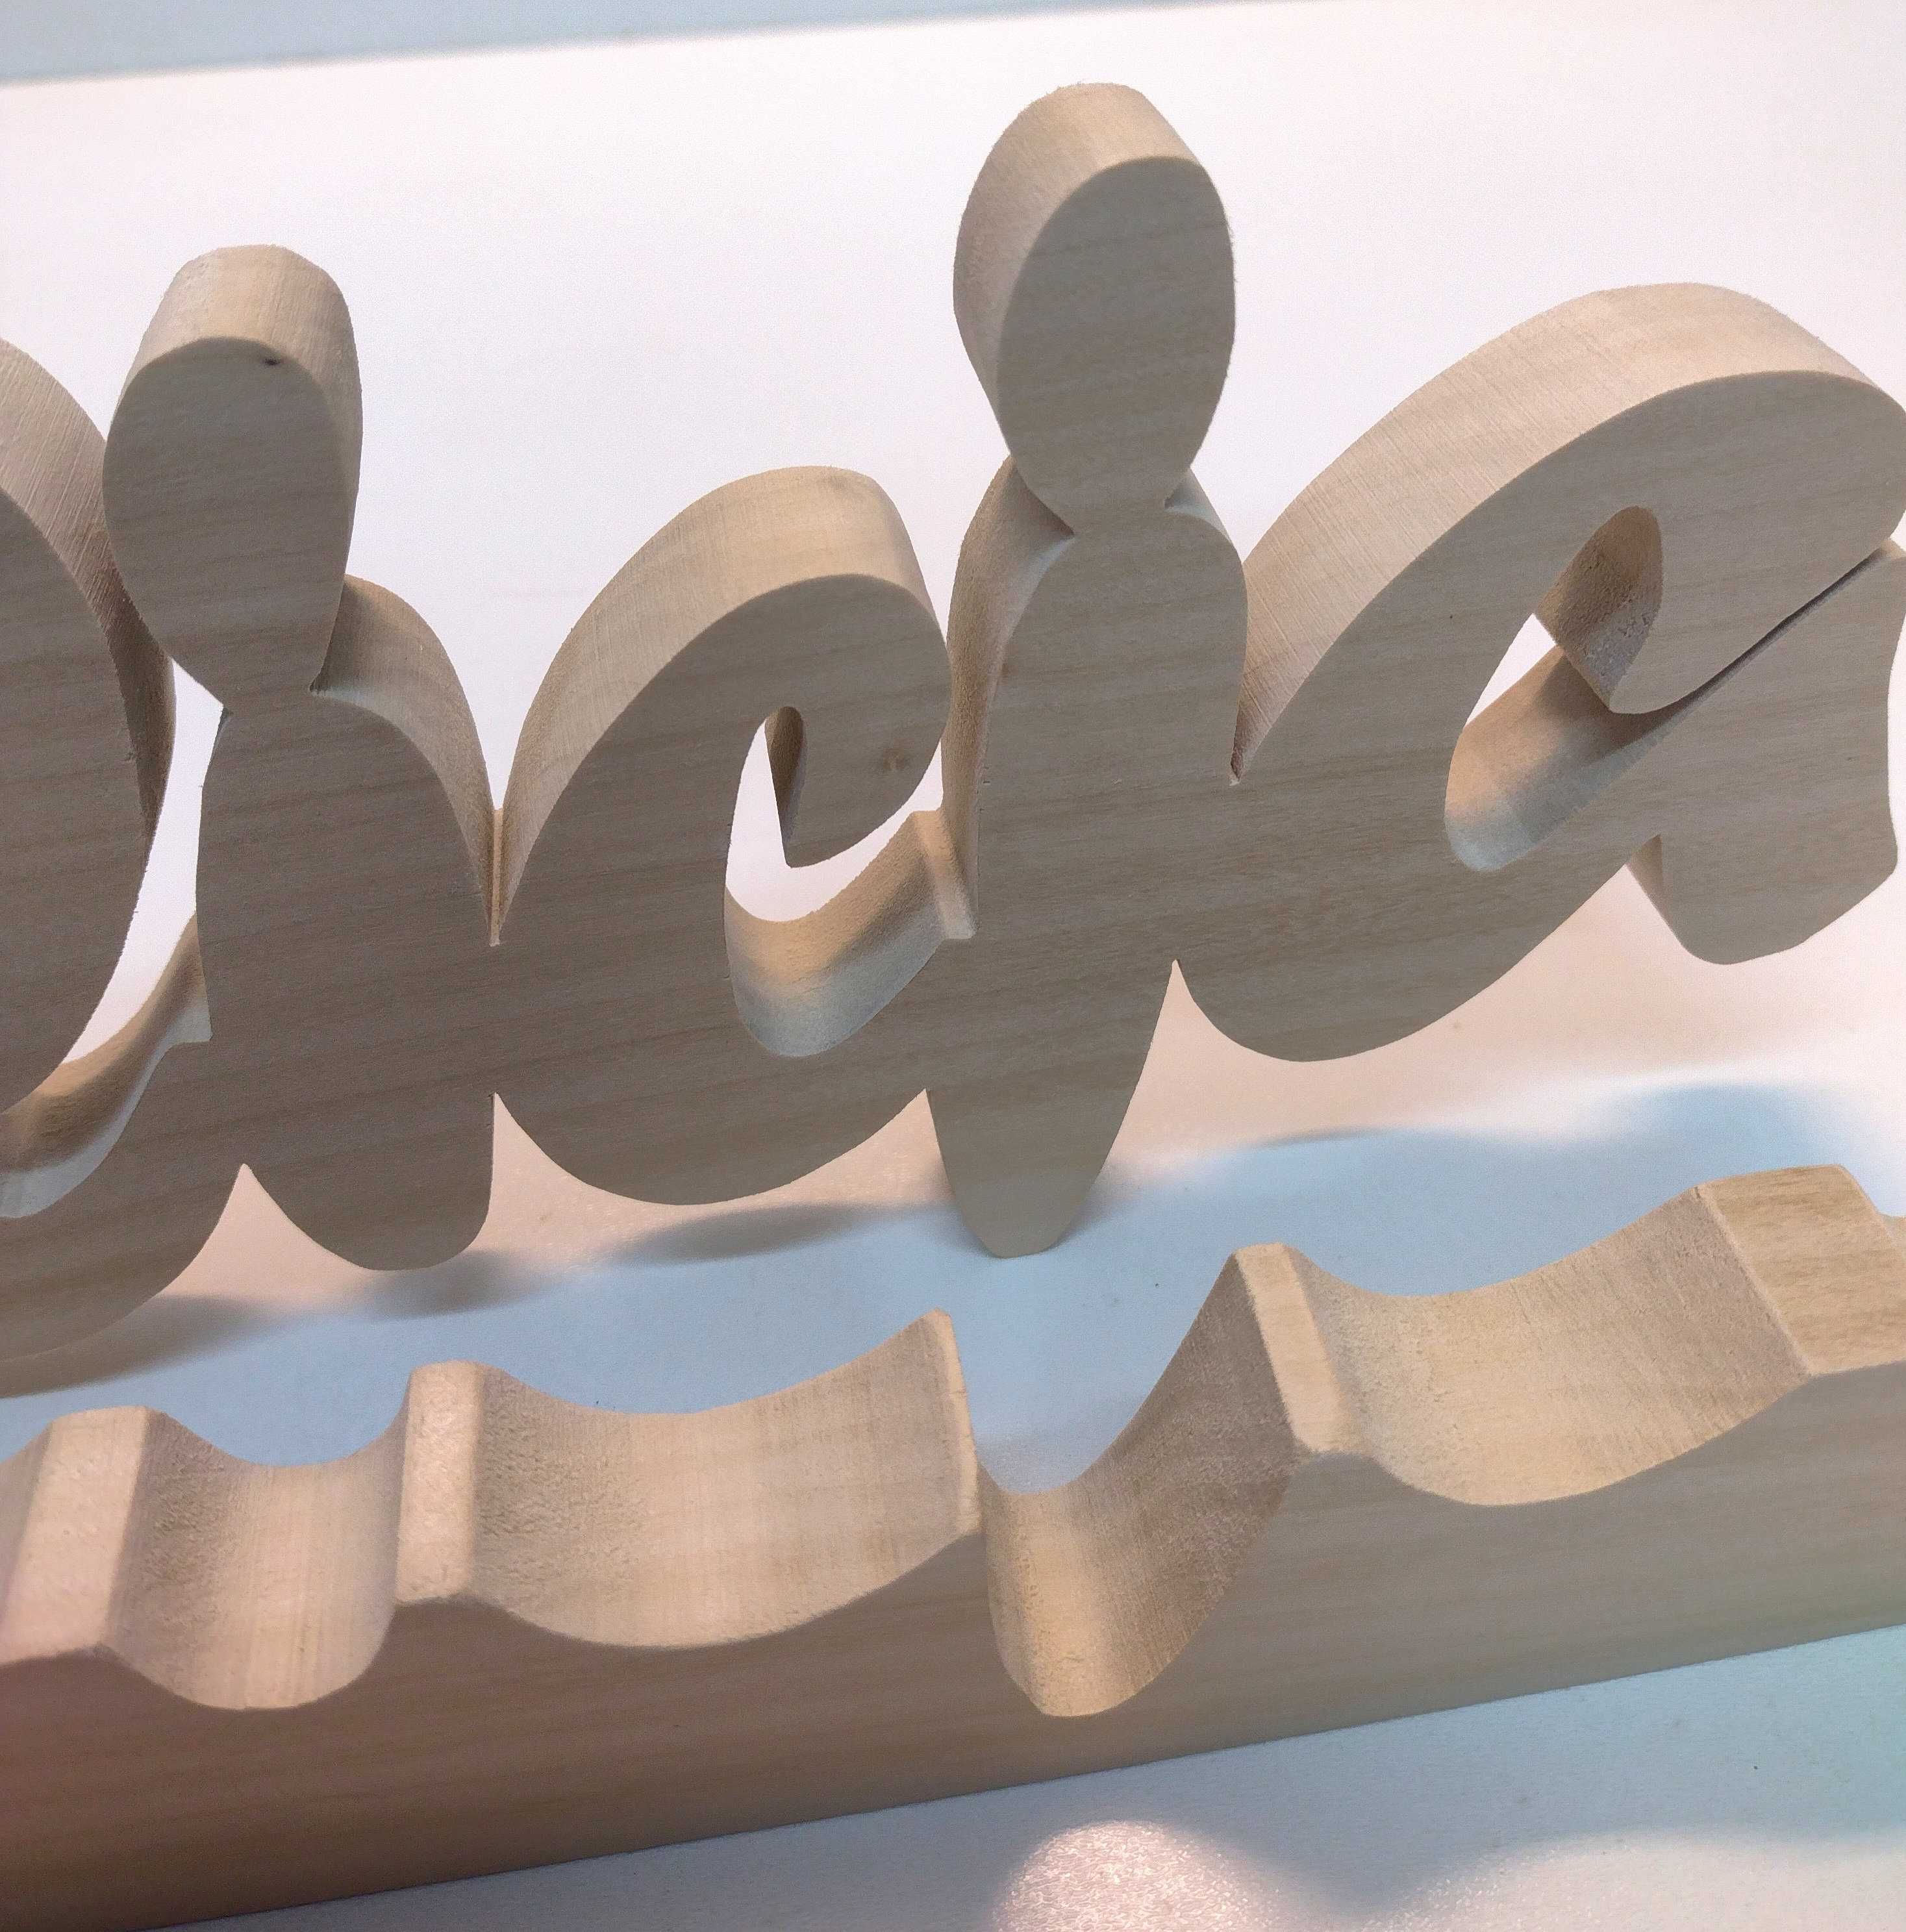 Alicja Imię dziecka Napis z drewna 30cm litera 3D